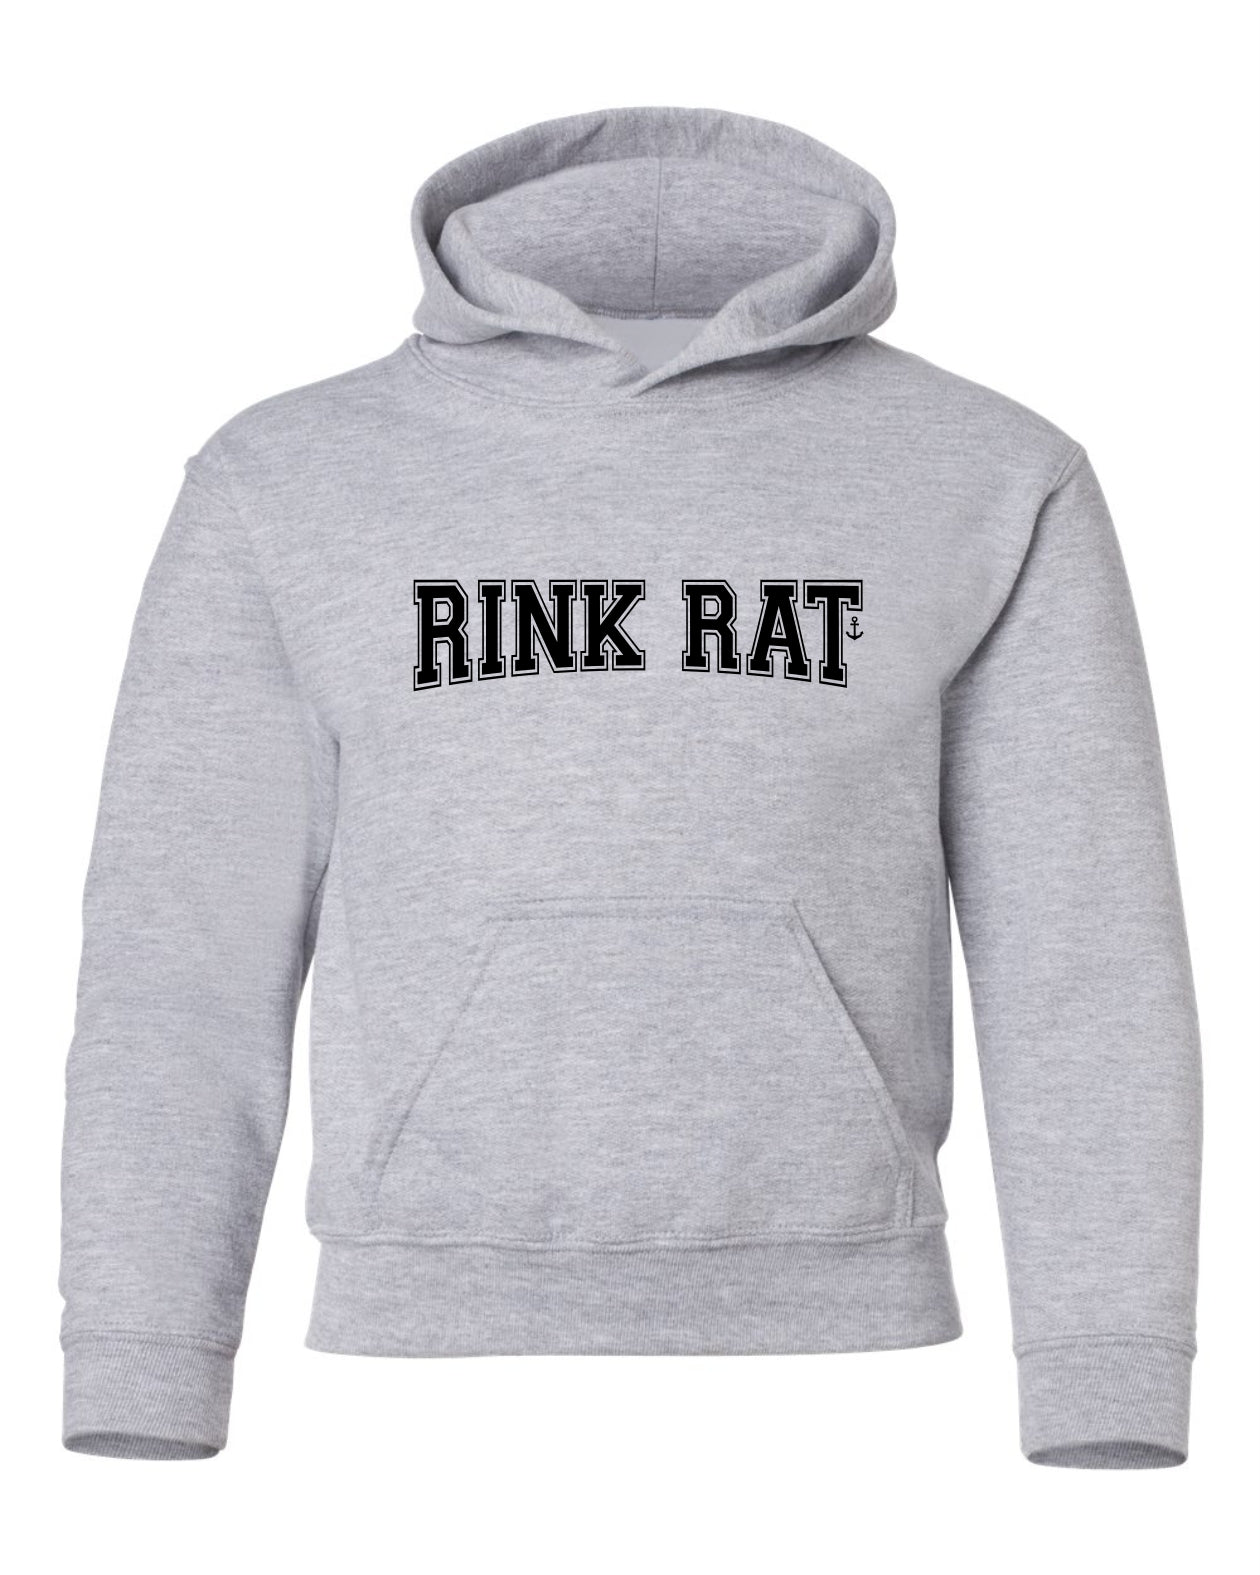 "Rink Rat" Youth Hoodie